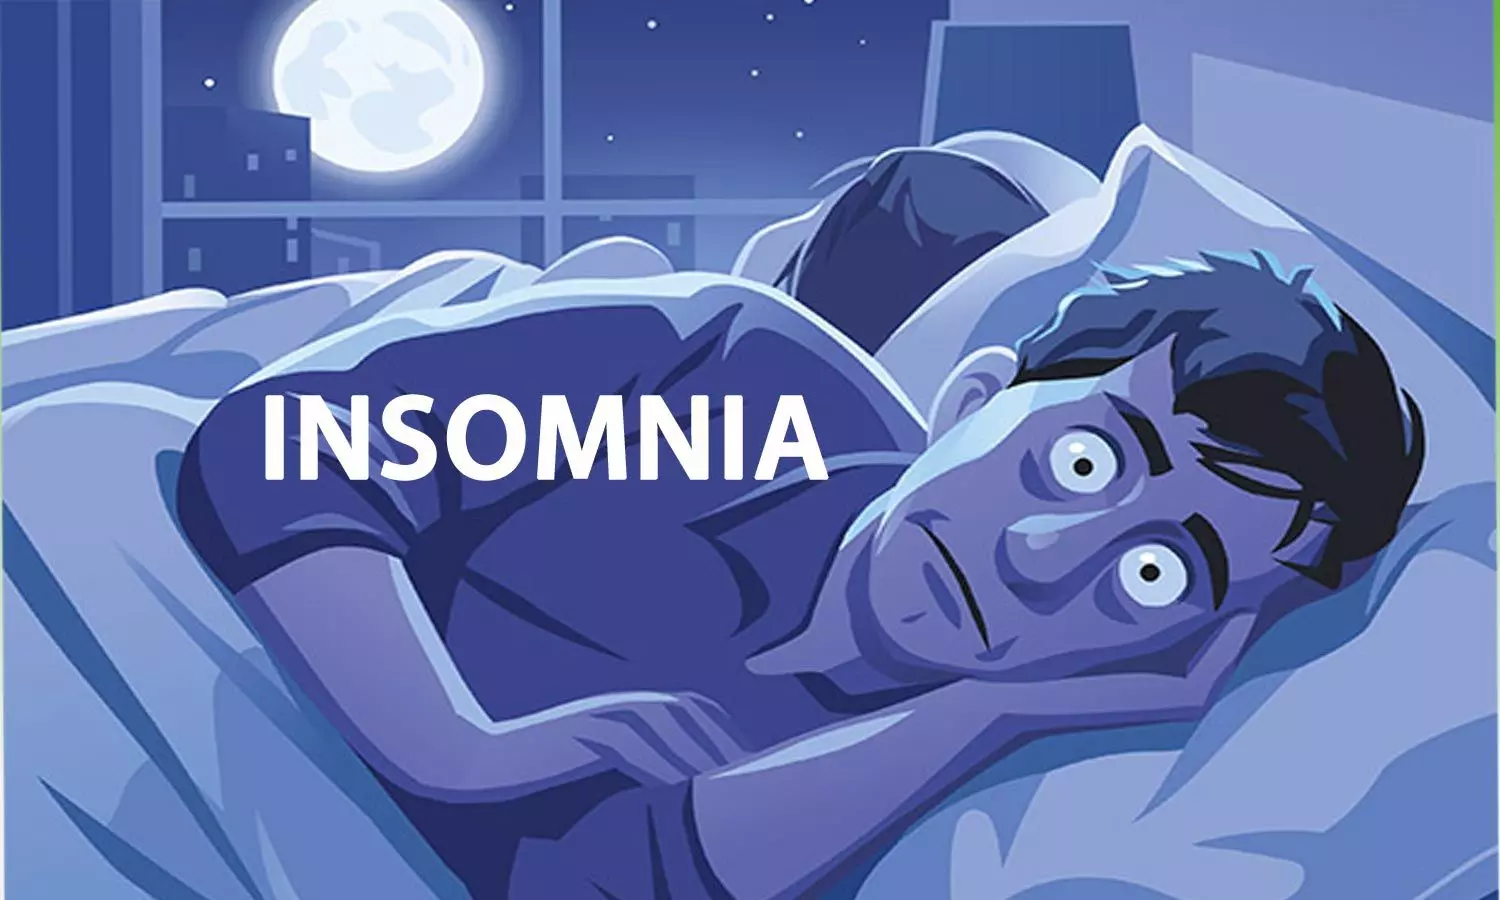 Insomnia: Lack of Sleep